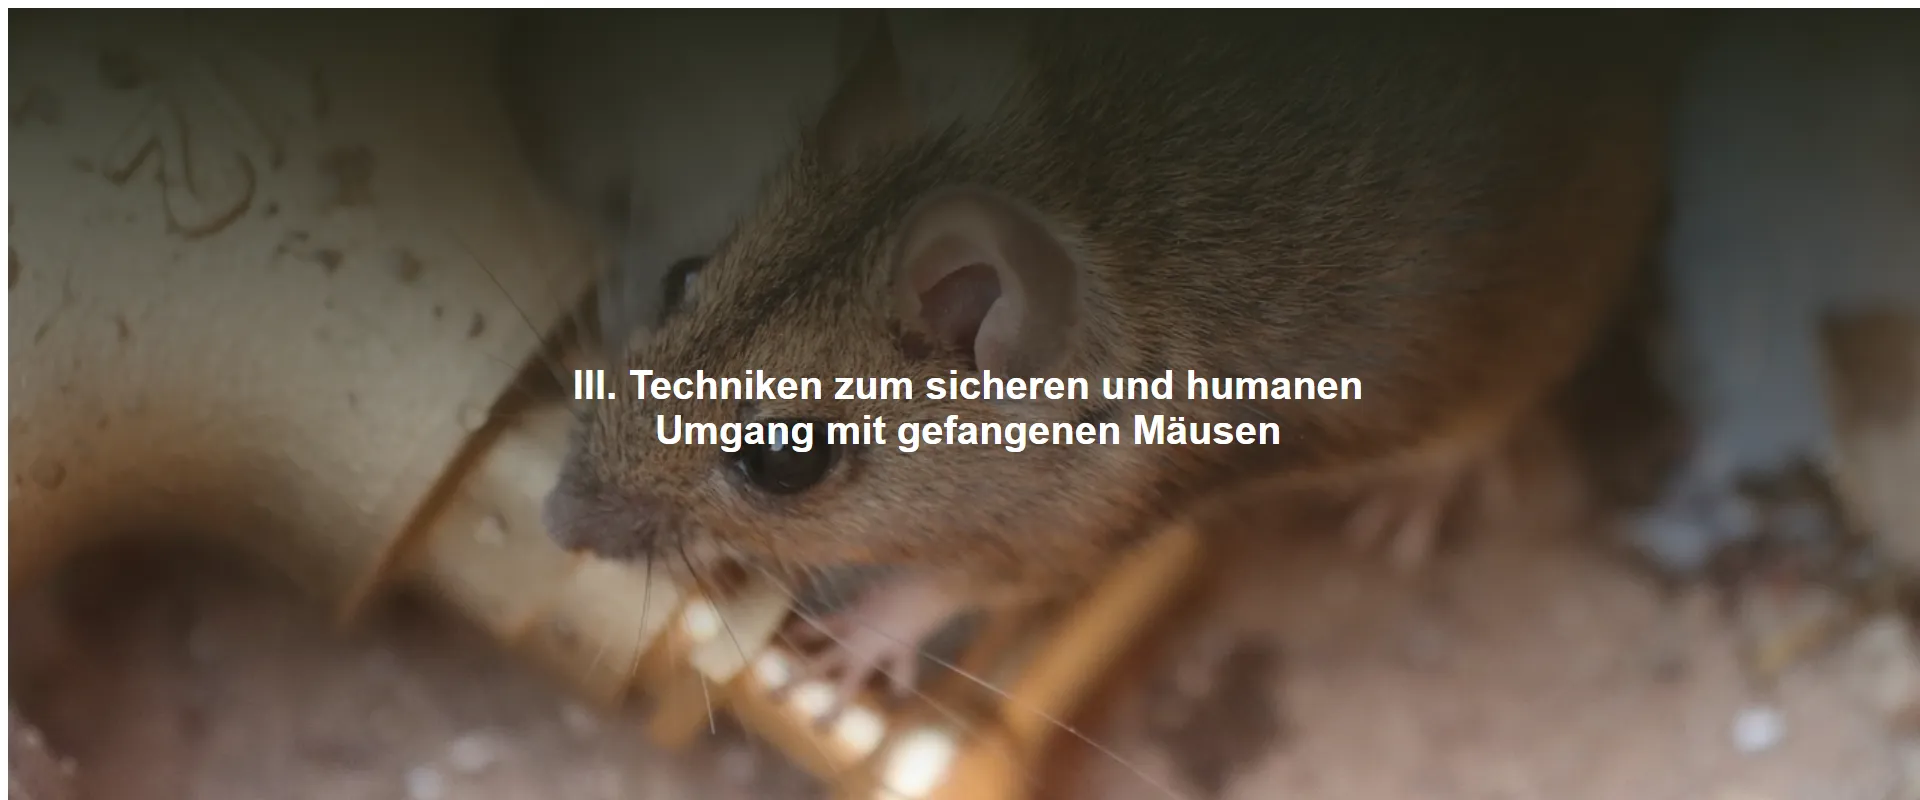 Techniken zum sicheren und humanen Umgang mit gefangenen Mäusen